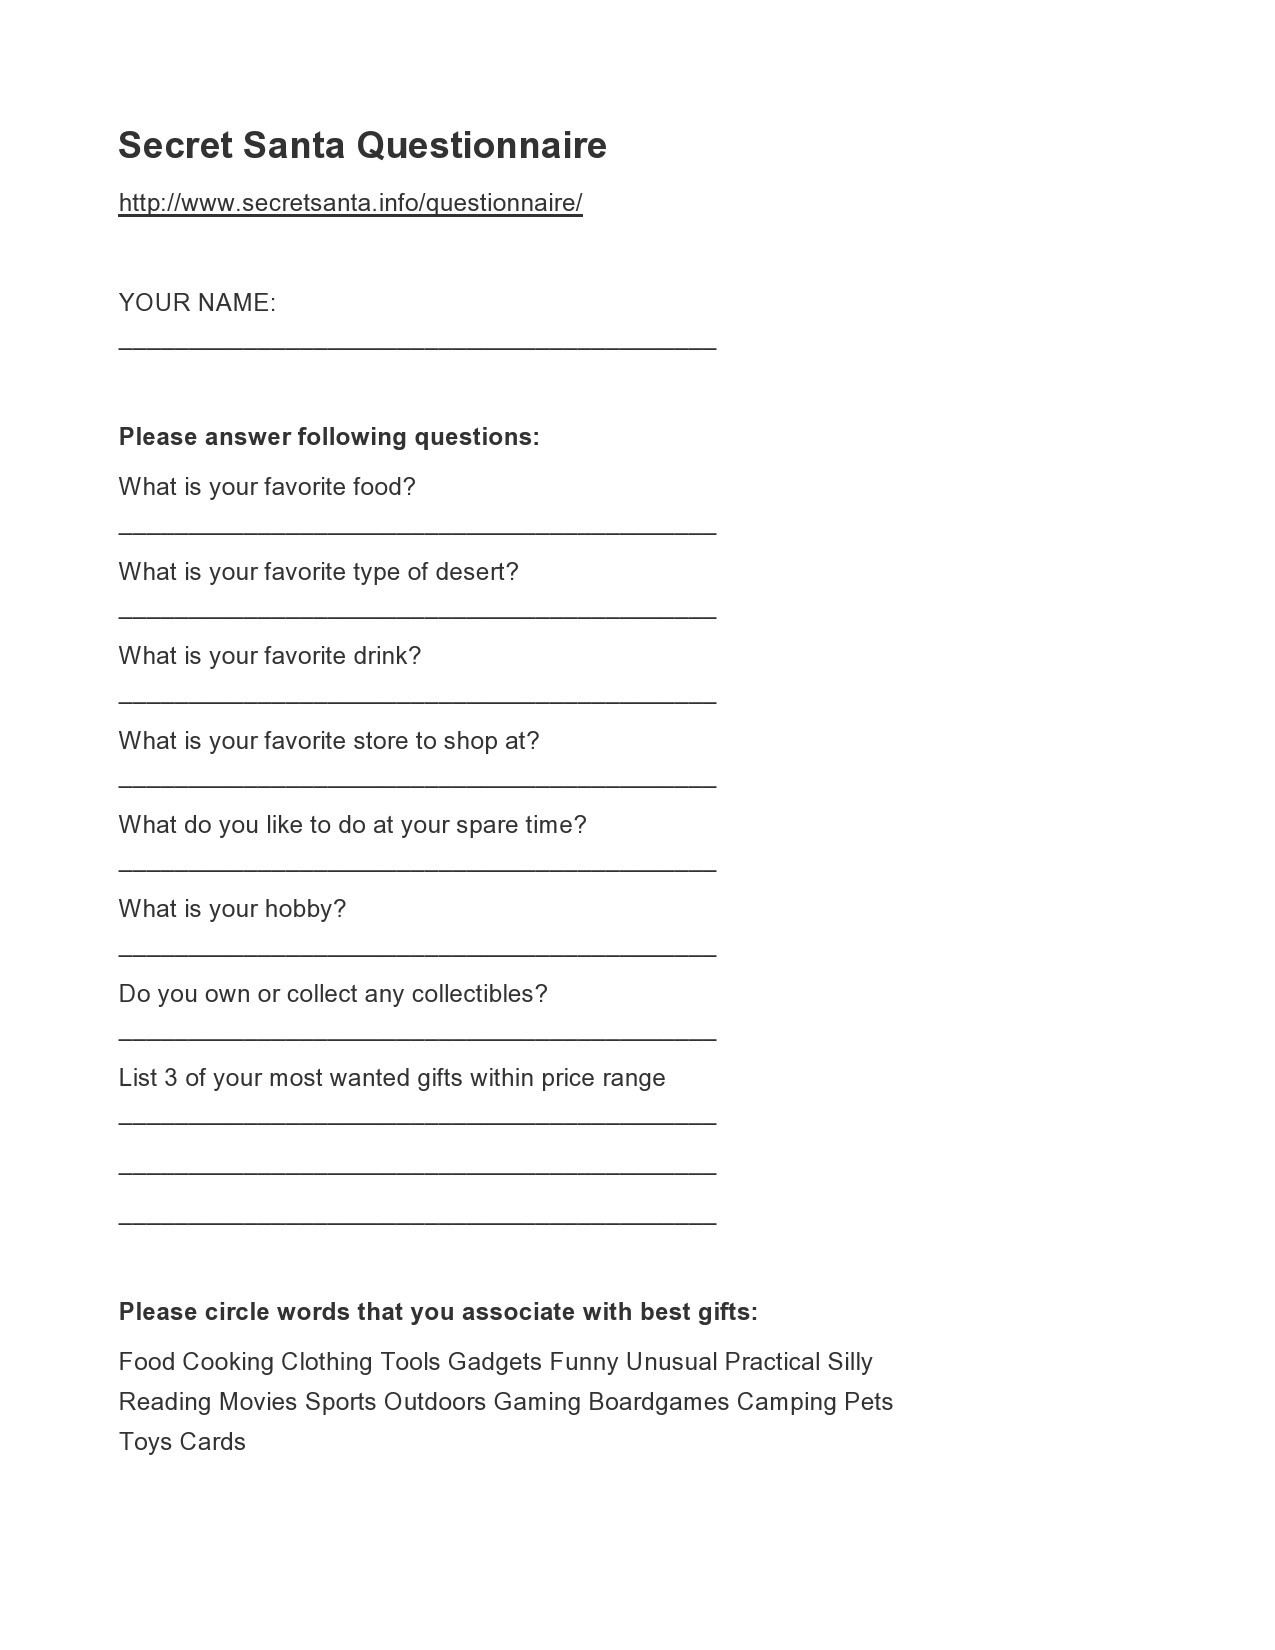 25 Printable Secret Santa Questionnaire Templates ᐅ TemplateLab